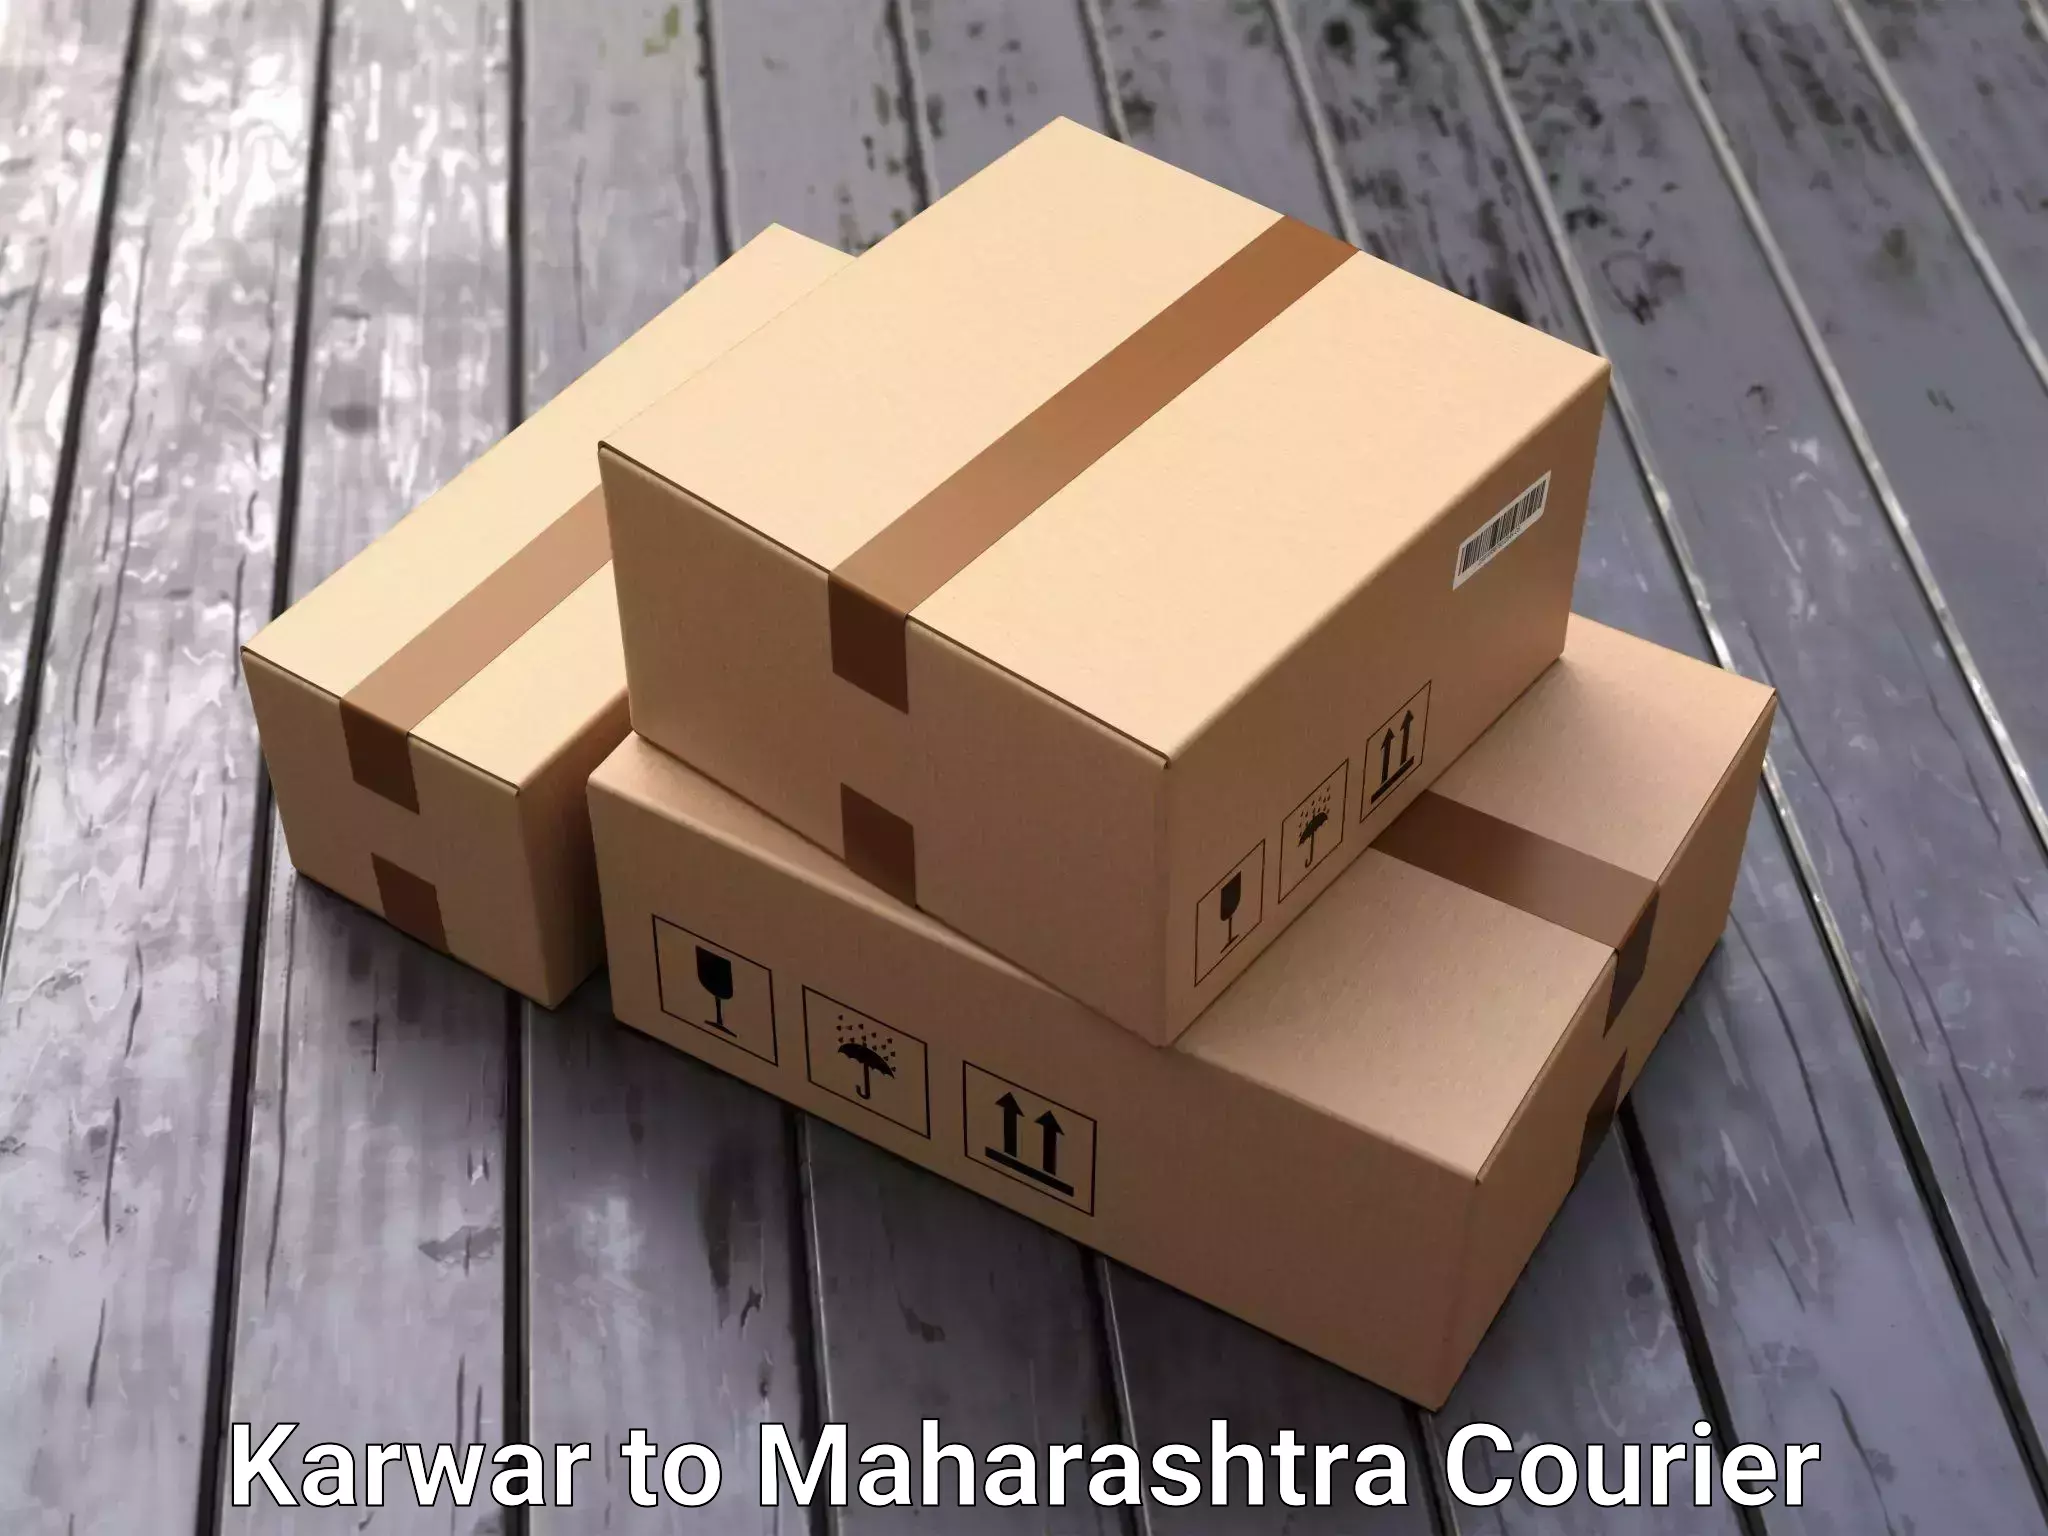 Full-service relocation Karwar to Maharashtra